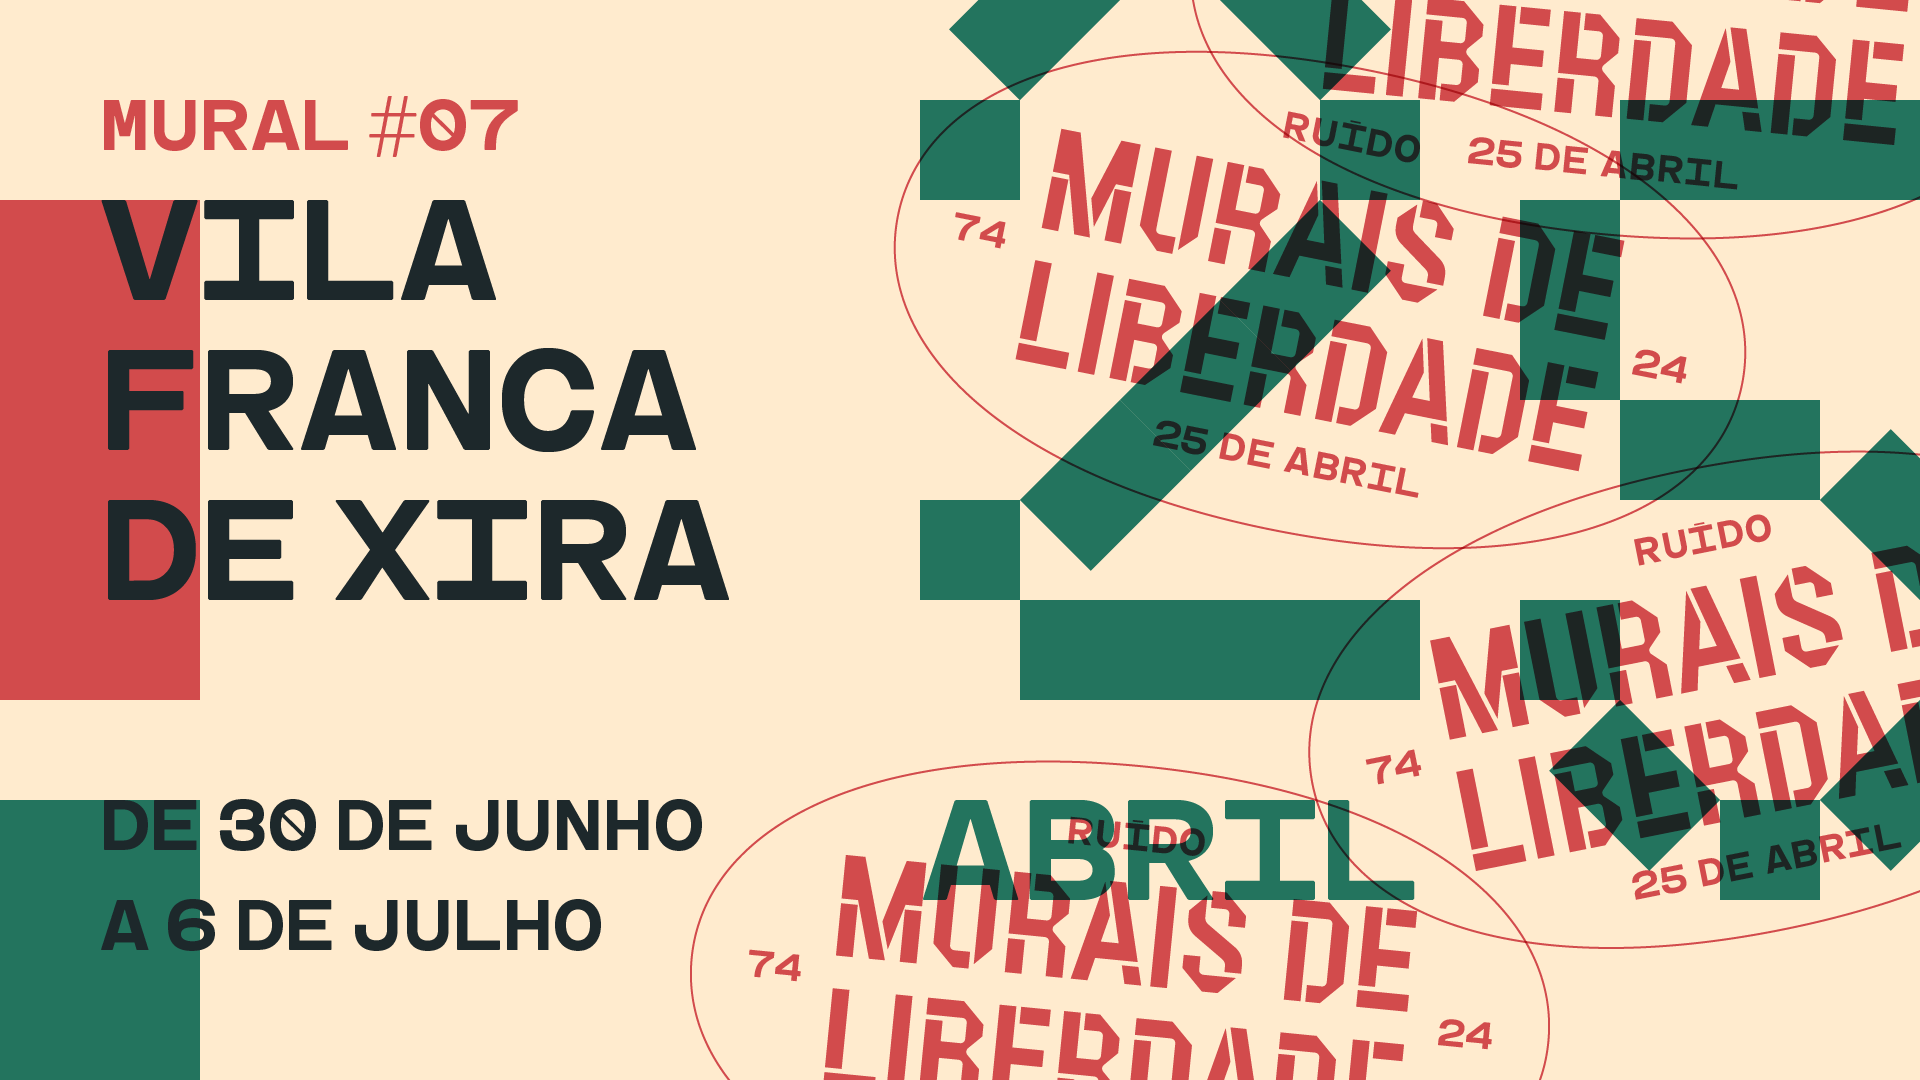  Vila Franca de Xira recebe “Murais da Liberdade”  